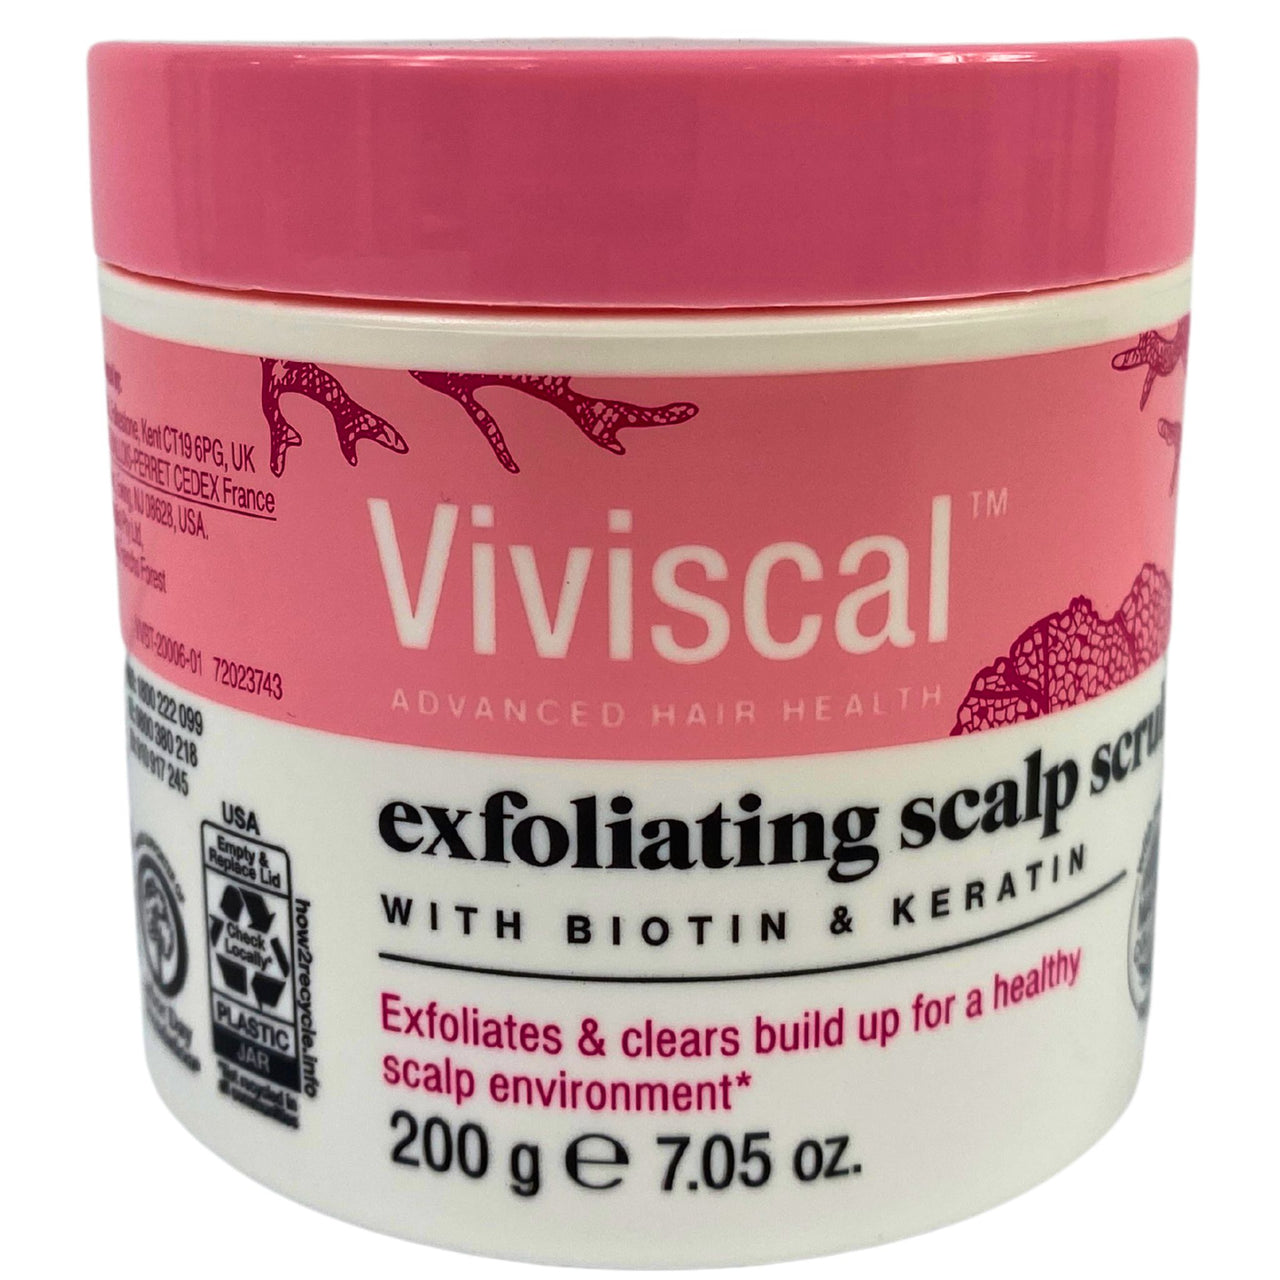 Viviscal Exfoliating Scalp Scrub with Biotin & Keratin